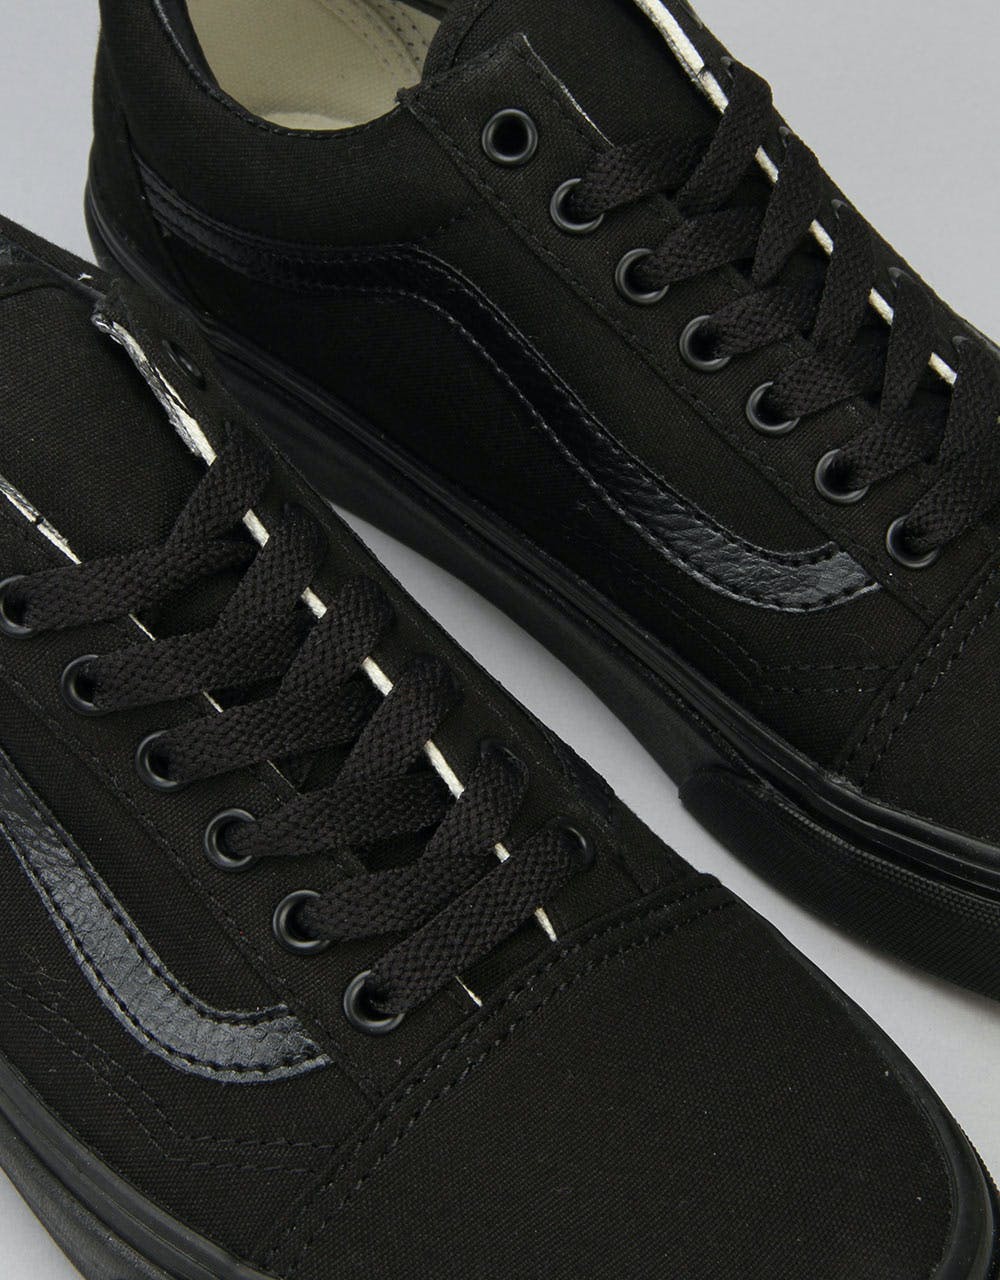 Vans Old Skool Skate Shoes - Black/Black